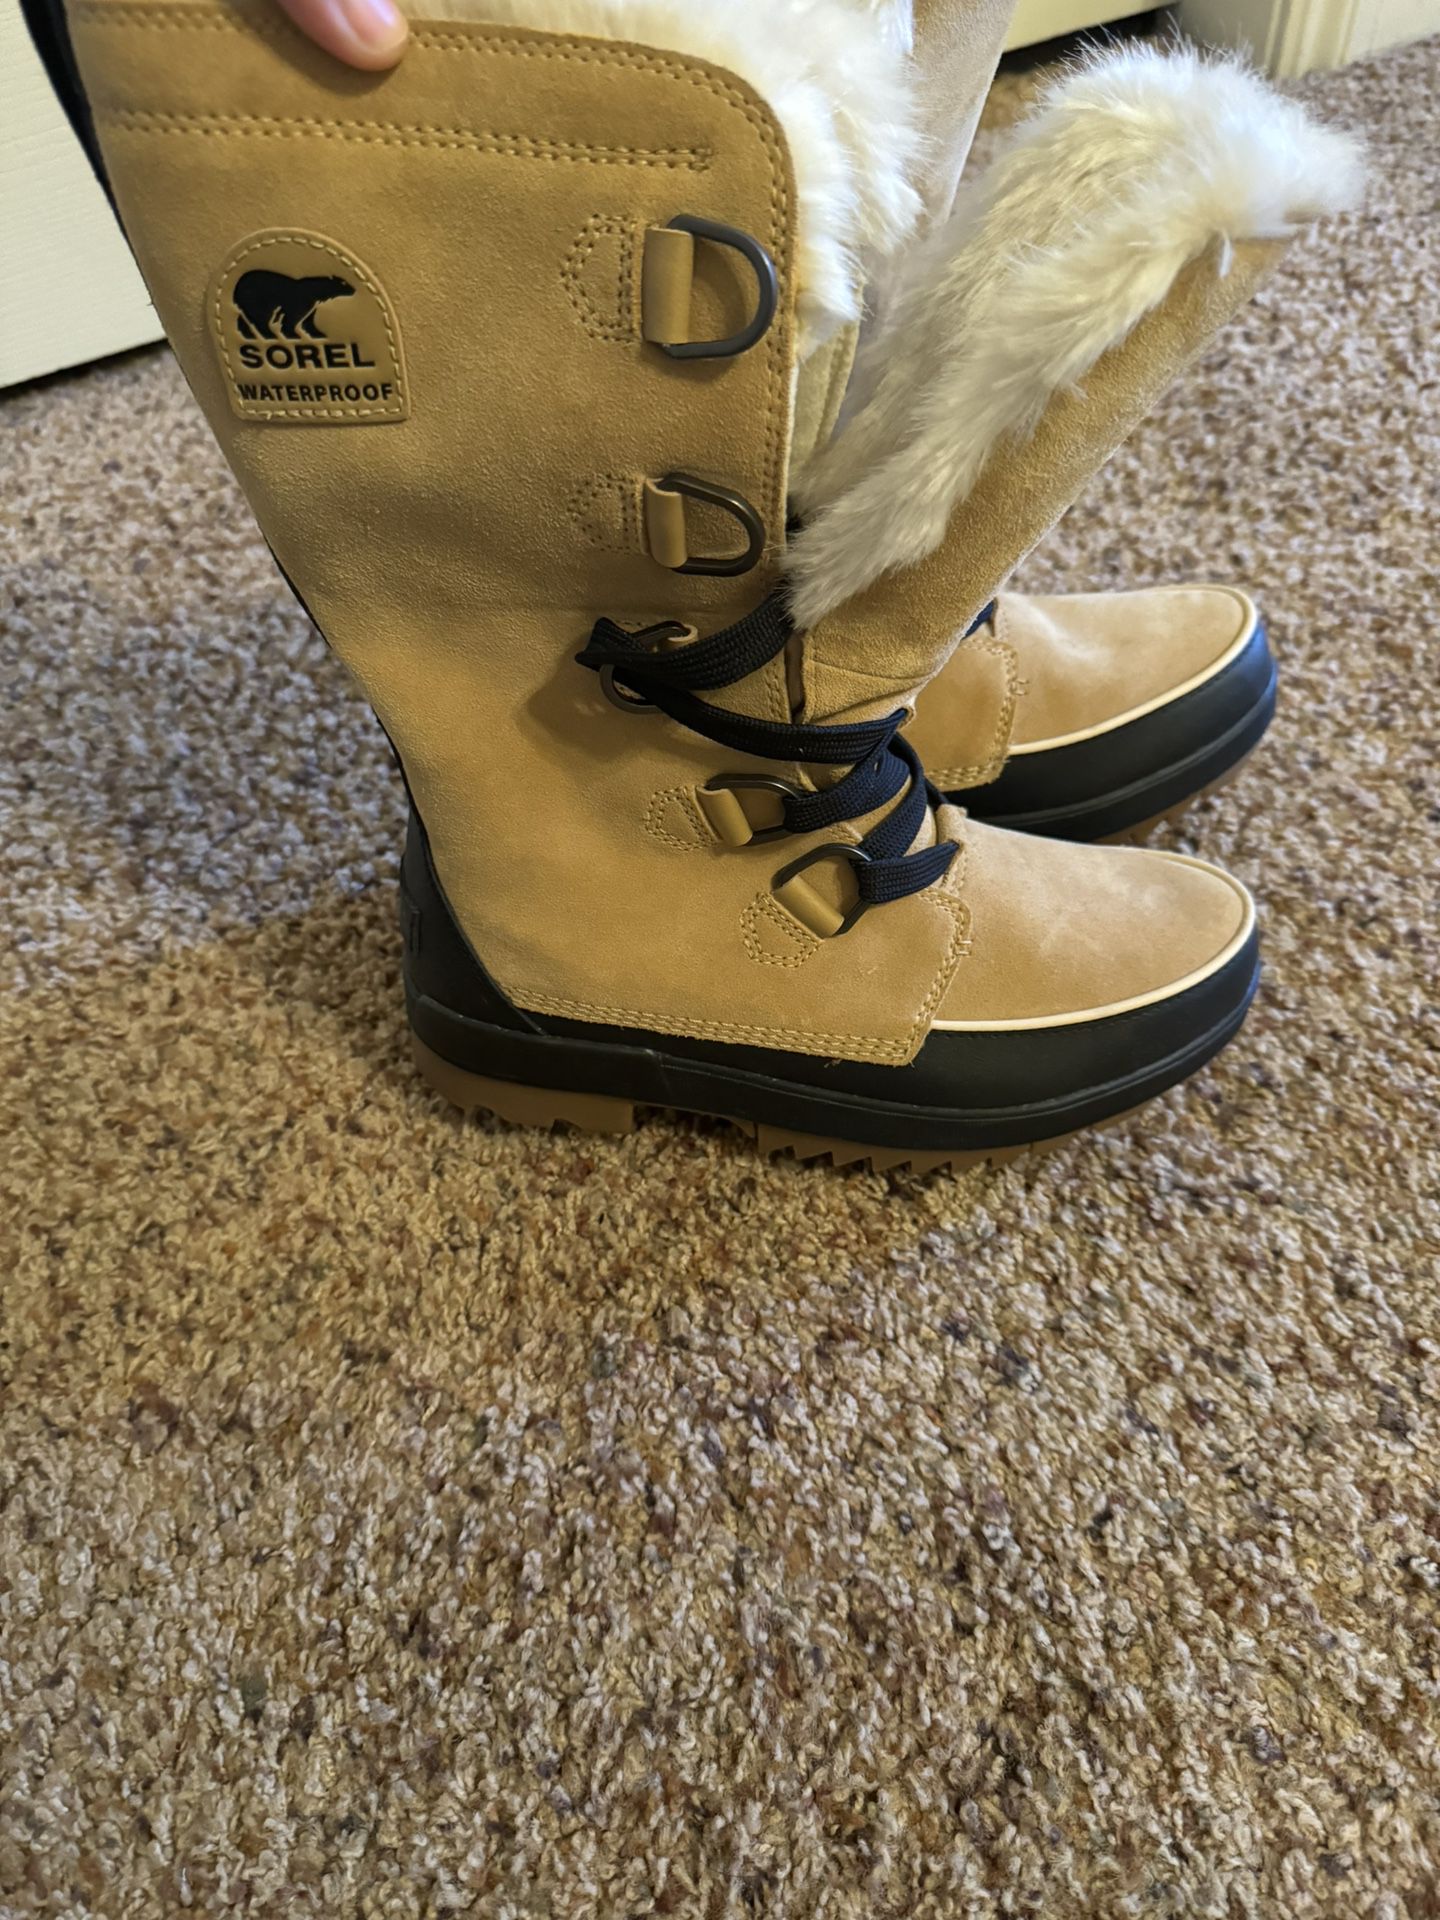 Sorel Waterproof Women’s Boots Size 9